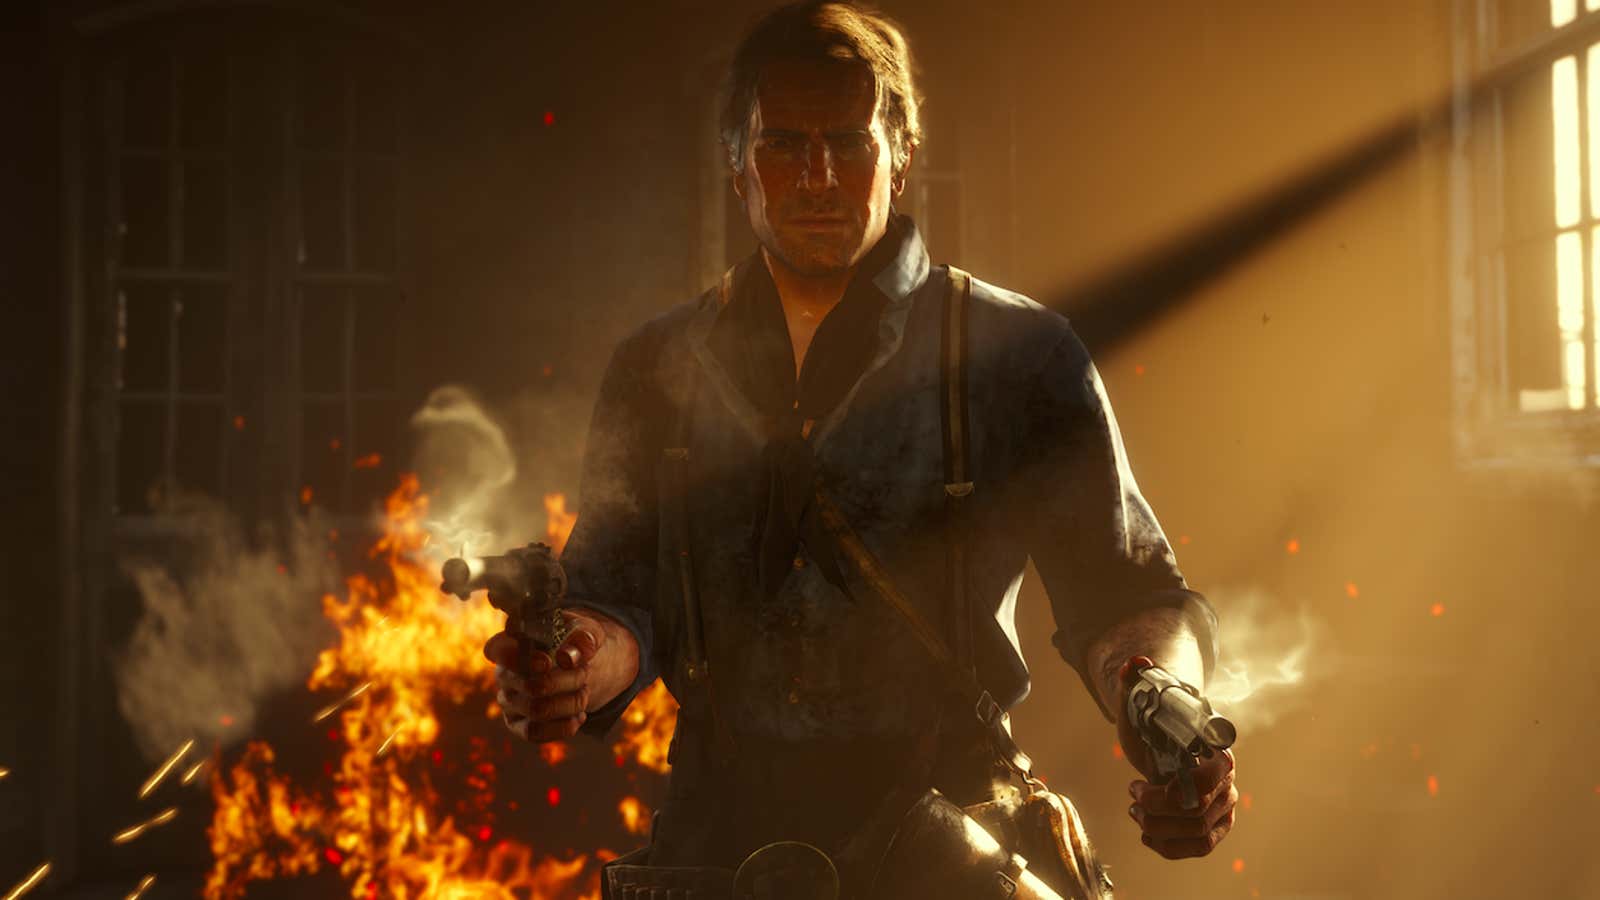 Red Dead Redemption 2 breaks 53 million sales, Take-Two 'pleased